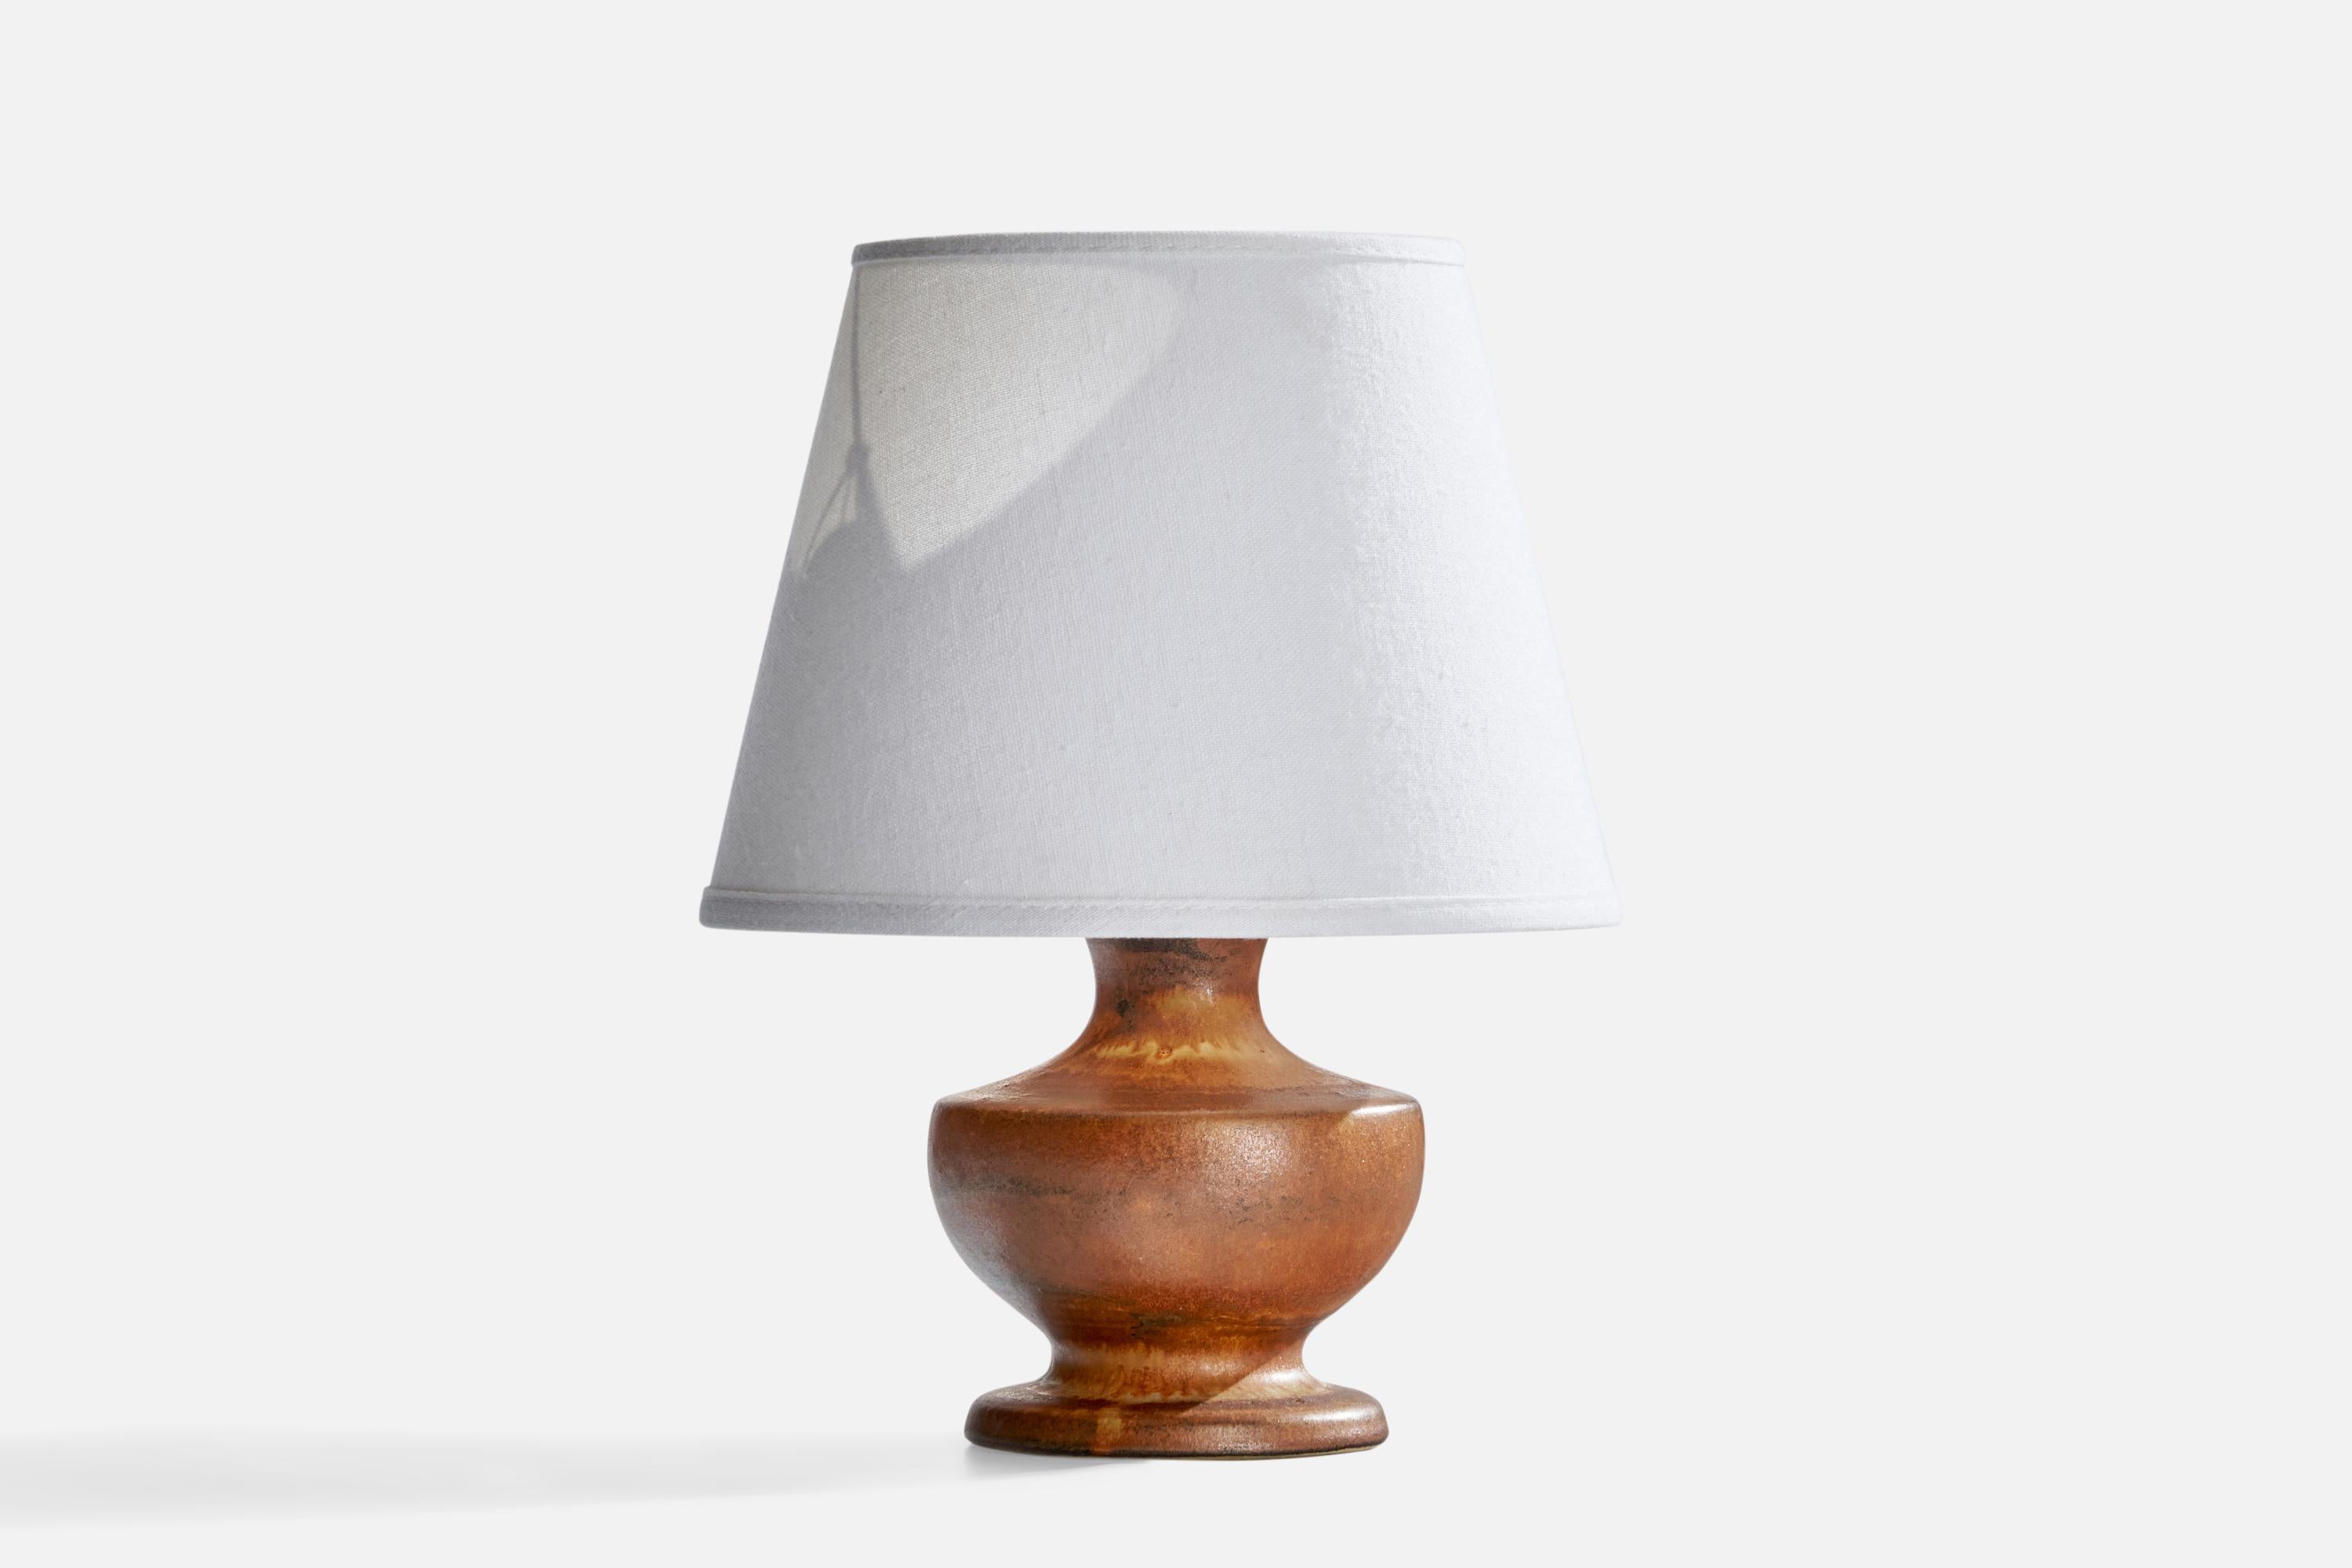 Tischlampe aus braun glasiertem Steingut, entworfen von Bruno Karlsson und hergestellt von Ego Stengods, Schweden, um 1960.

Abmessungen der Lampe (Zoll): 7